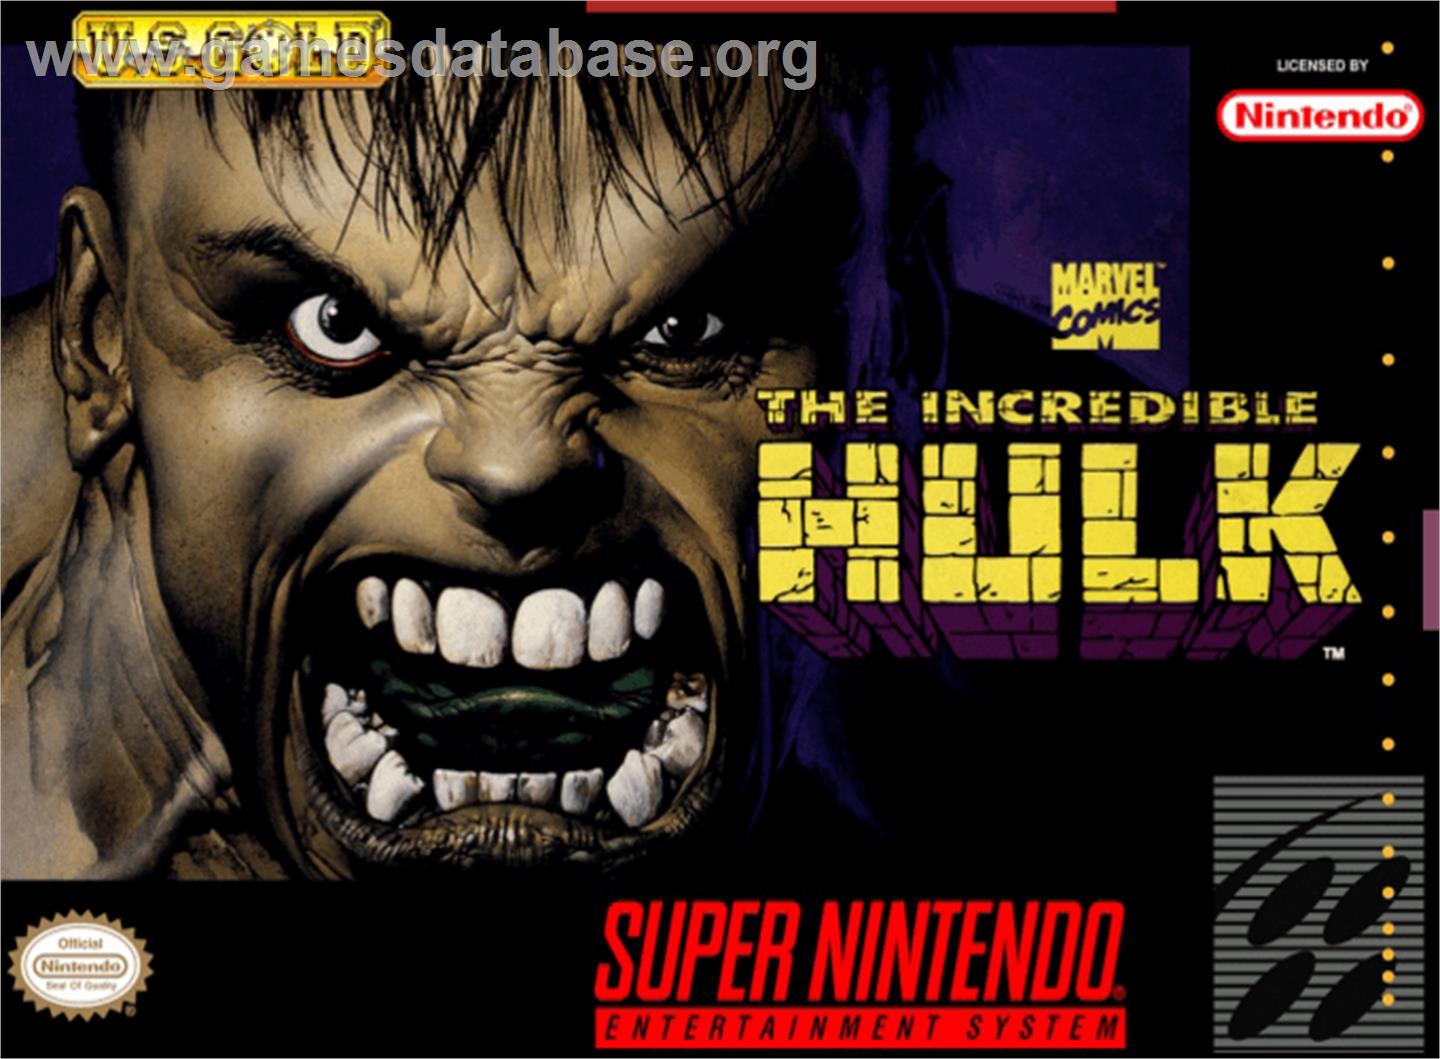 The Incredible Hulk - Nintendo SNES - Artwork - Box